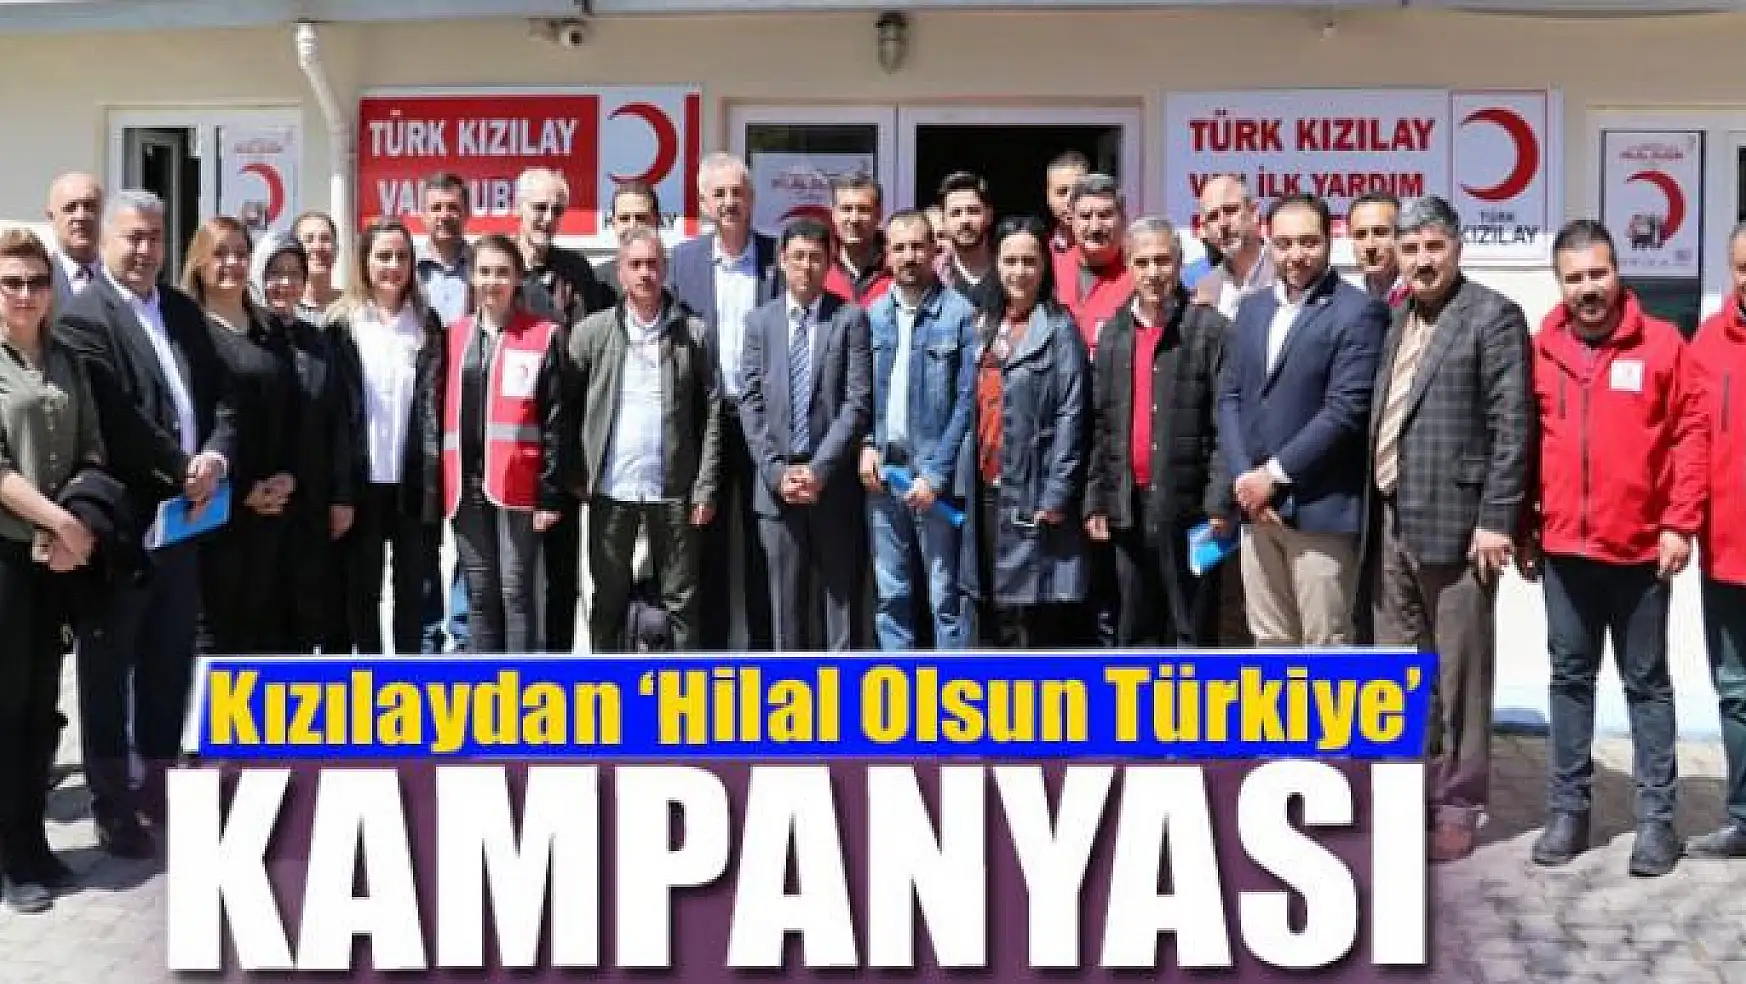 Kızılaydan 'Hilal Olsun Türkiye' kampanyası